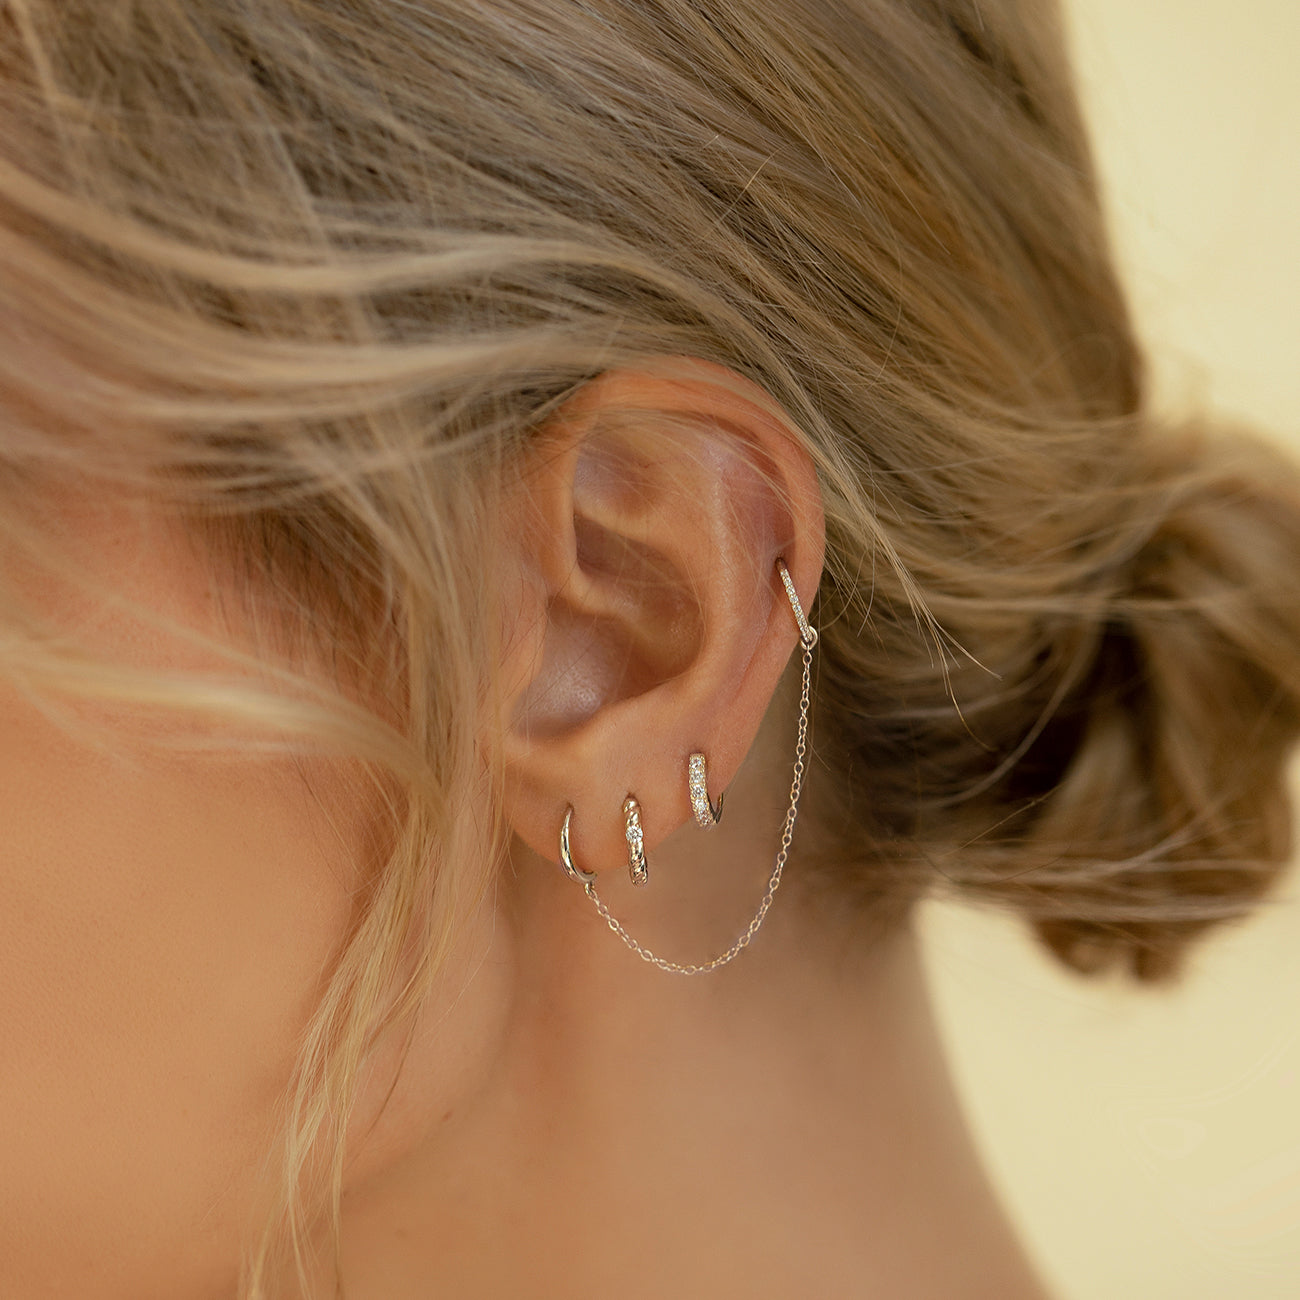 Helix Earrings - Jewelry for Helix Piercings | MARIA TASH